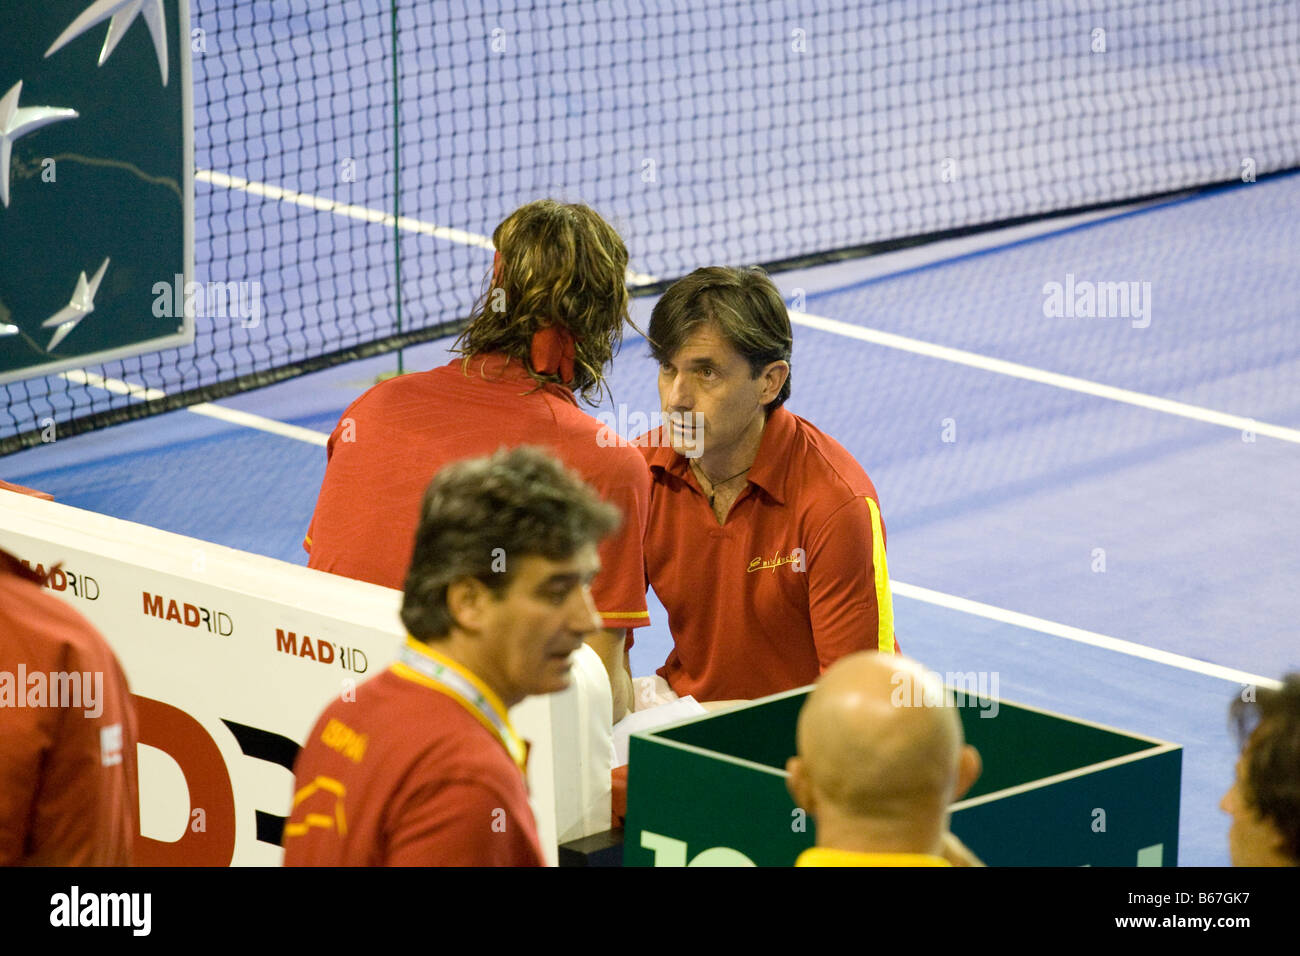 Spanischer Tennisspieler Feliciano Lopez erhält Richtung von der spanischen Mannschaftskapitän Emilio Sanchez Vicario während der 2008 Stockfoto